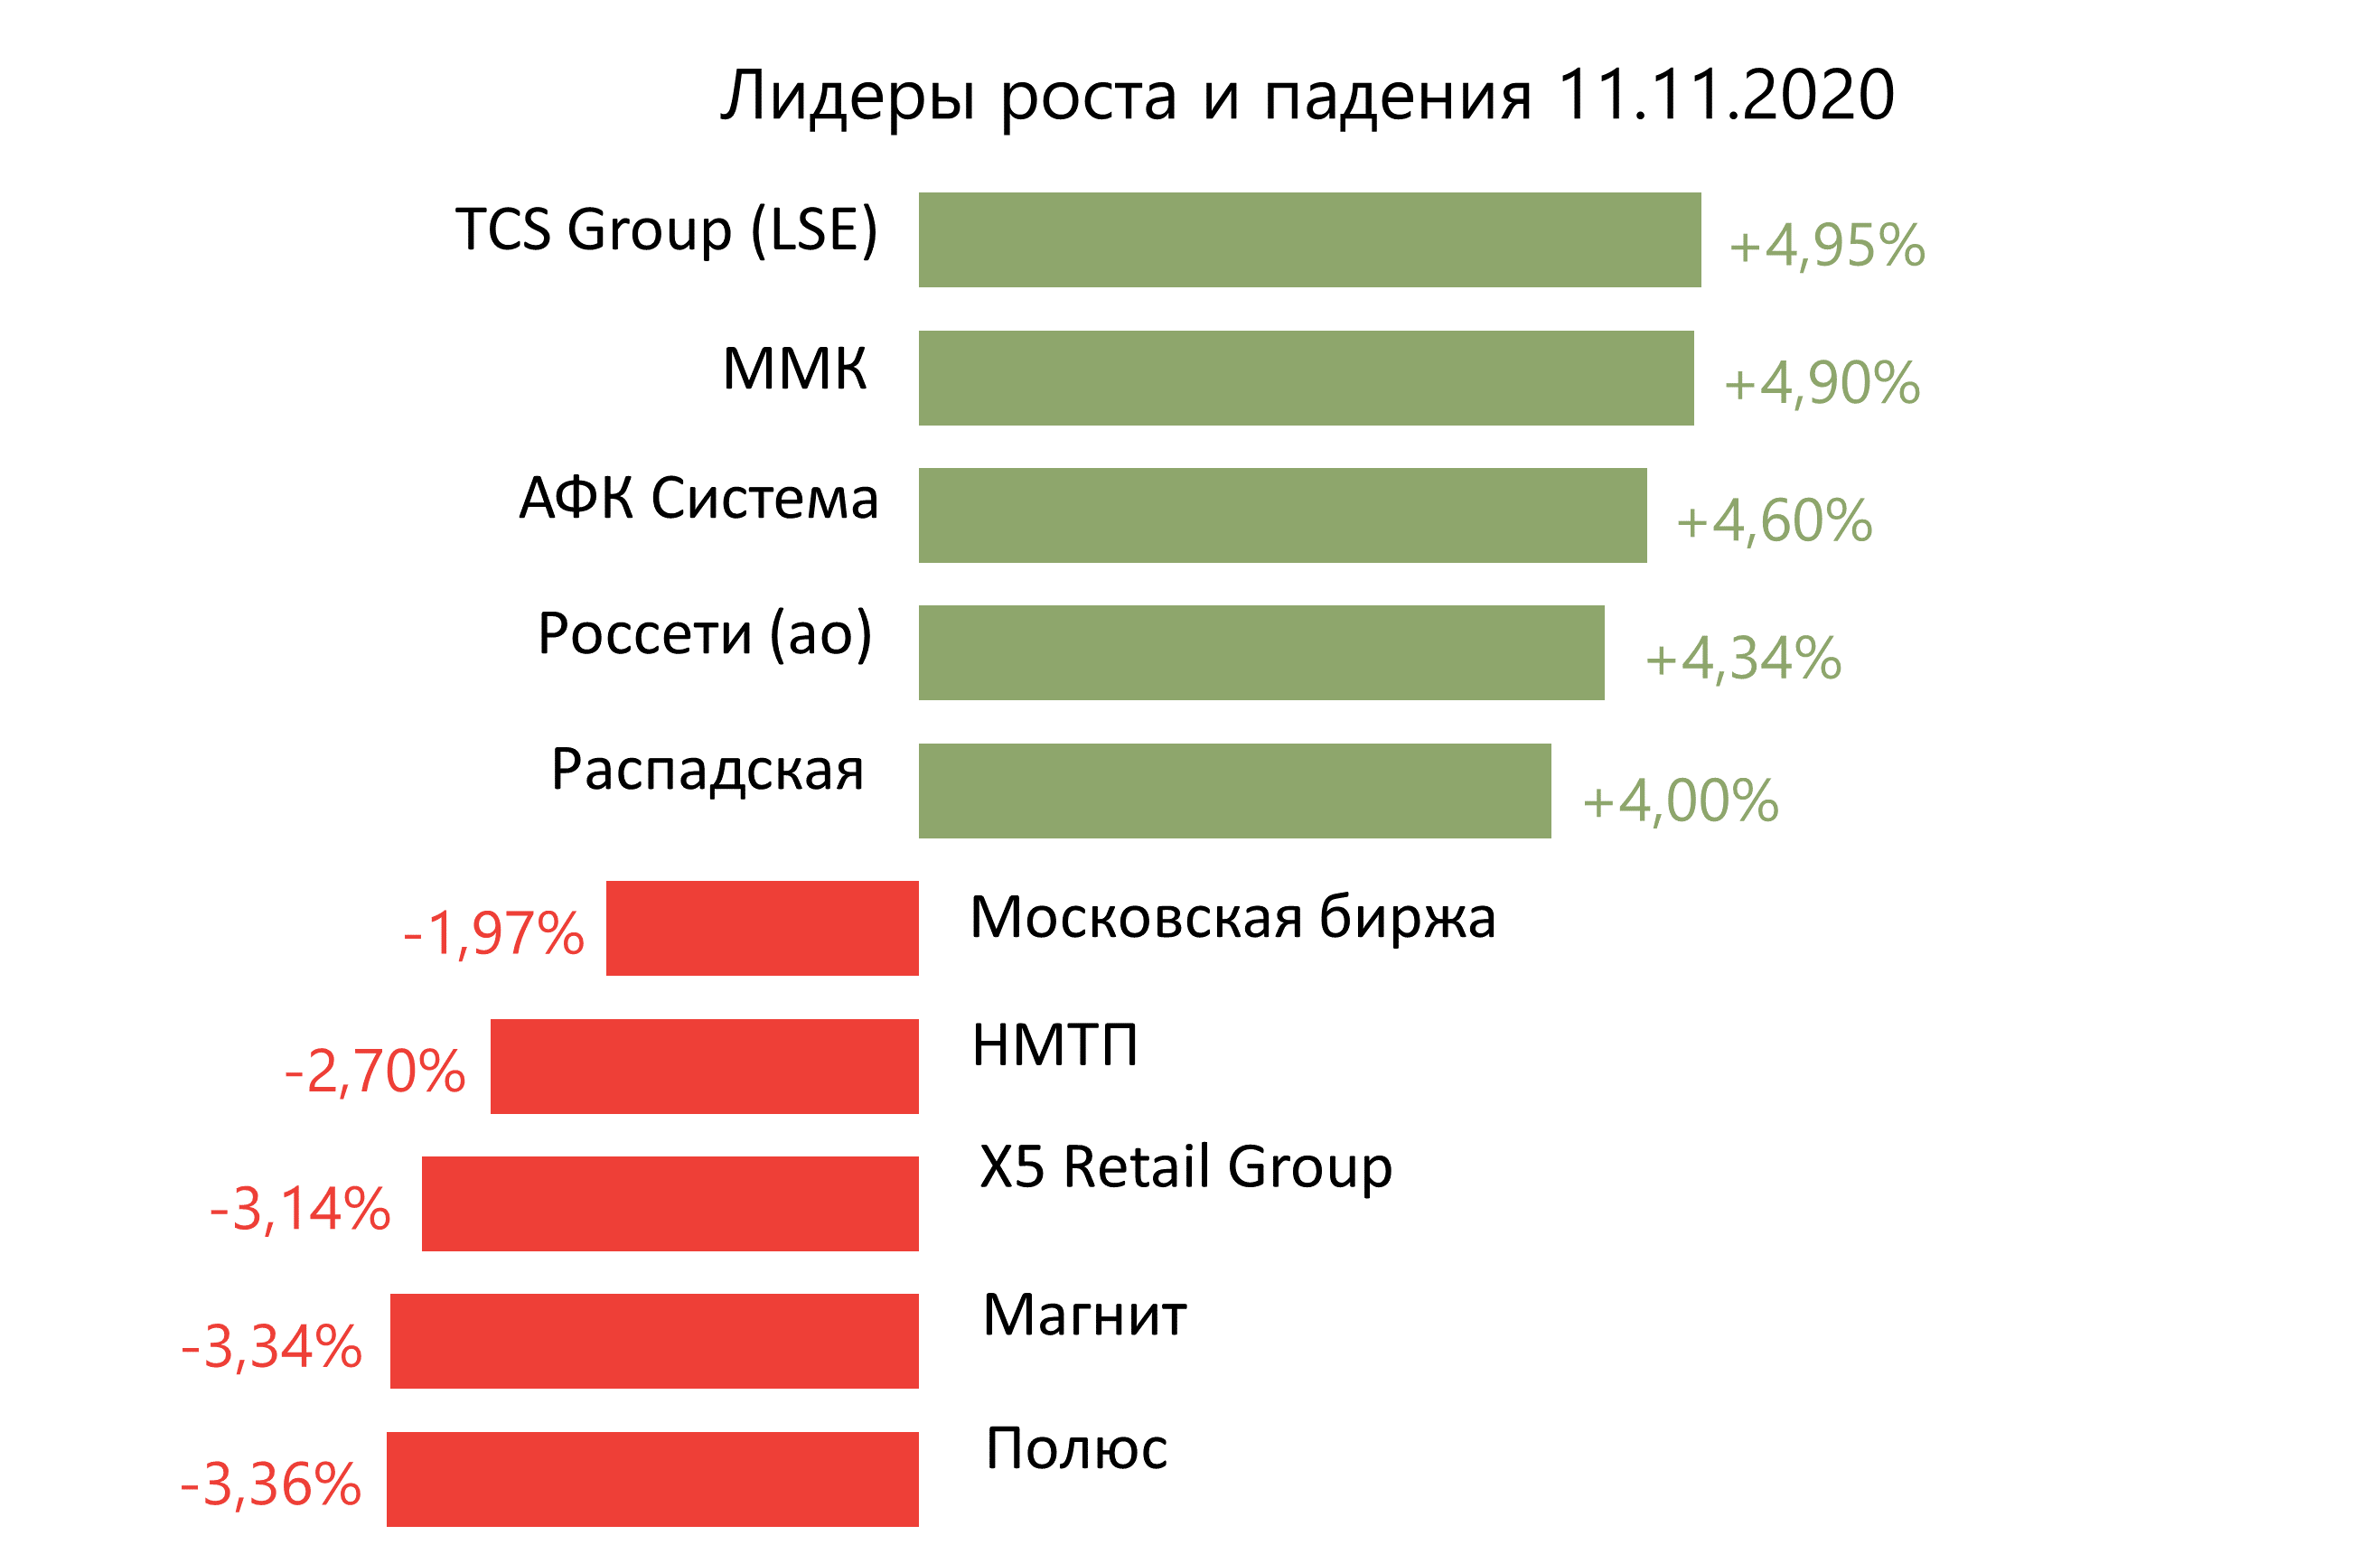 Лидеры роста и падения российского рынка на 11 ноября